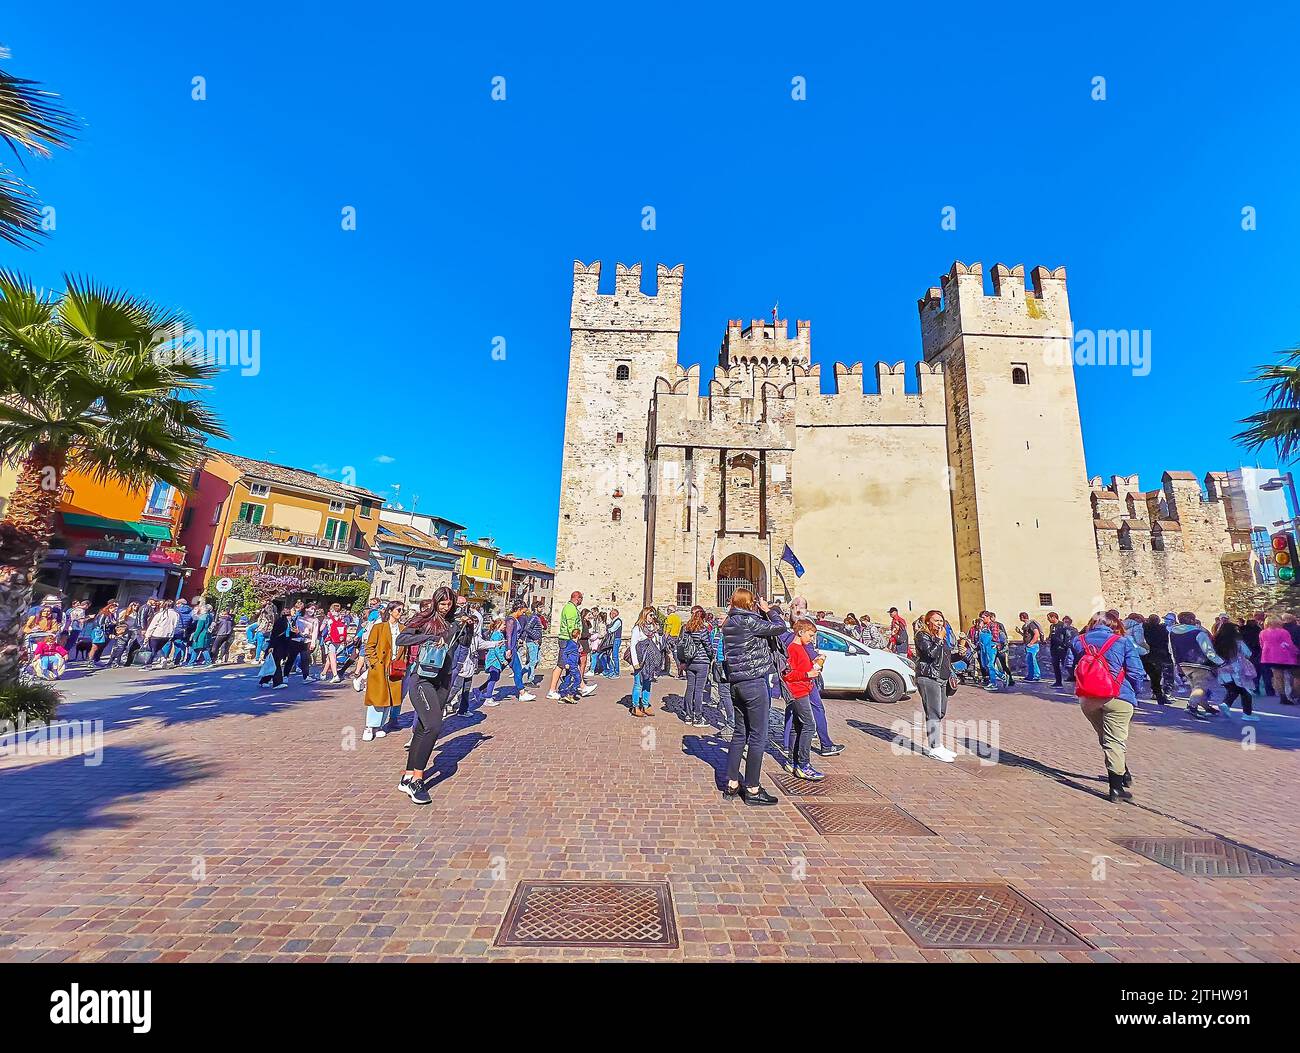 SIRMIONE, ITALIEN - 10. APRIL 2022: Der überfüllte Piazza Castello Platz mit alten Häusern, Restaurants im Freien und der historischen Burg Scaligero mit hohem Turm Stockfoto